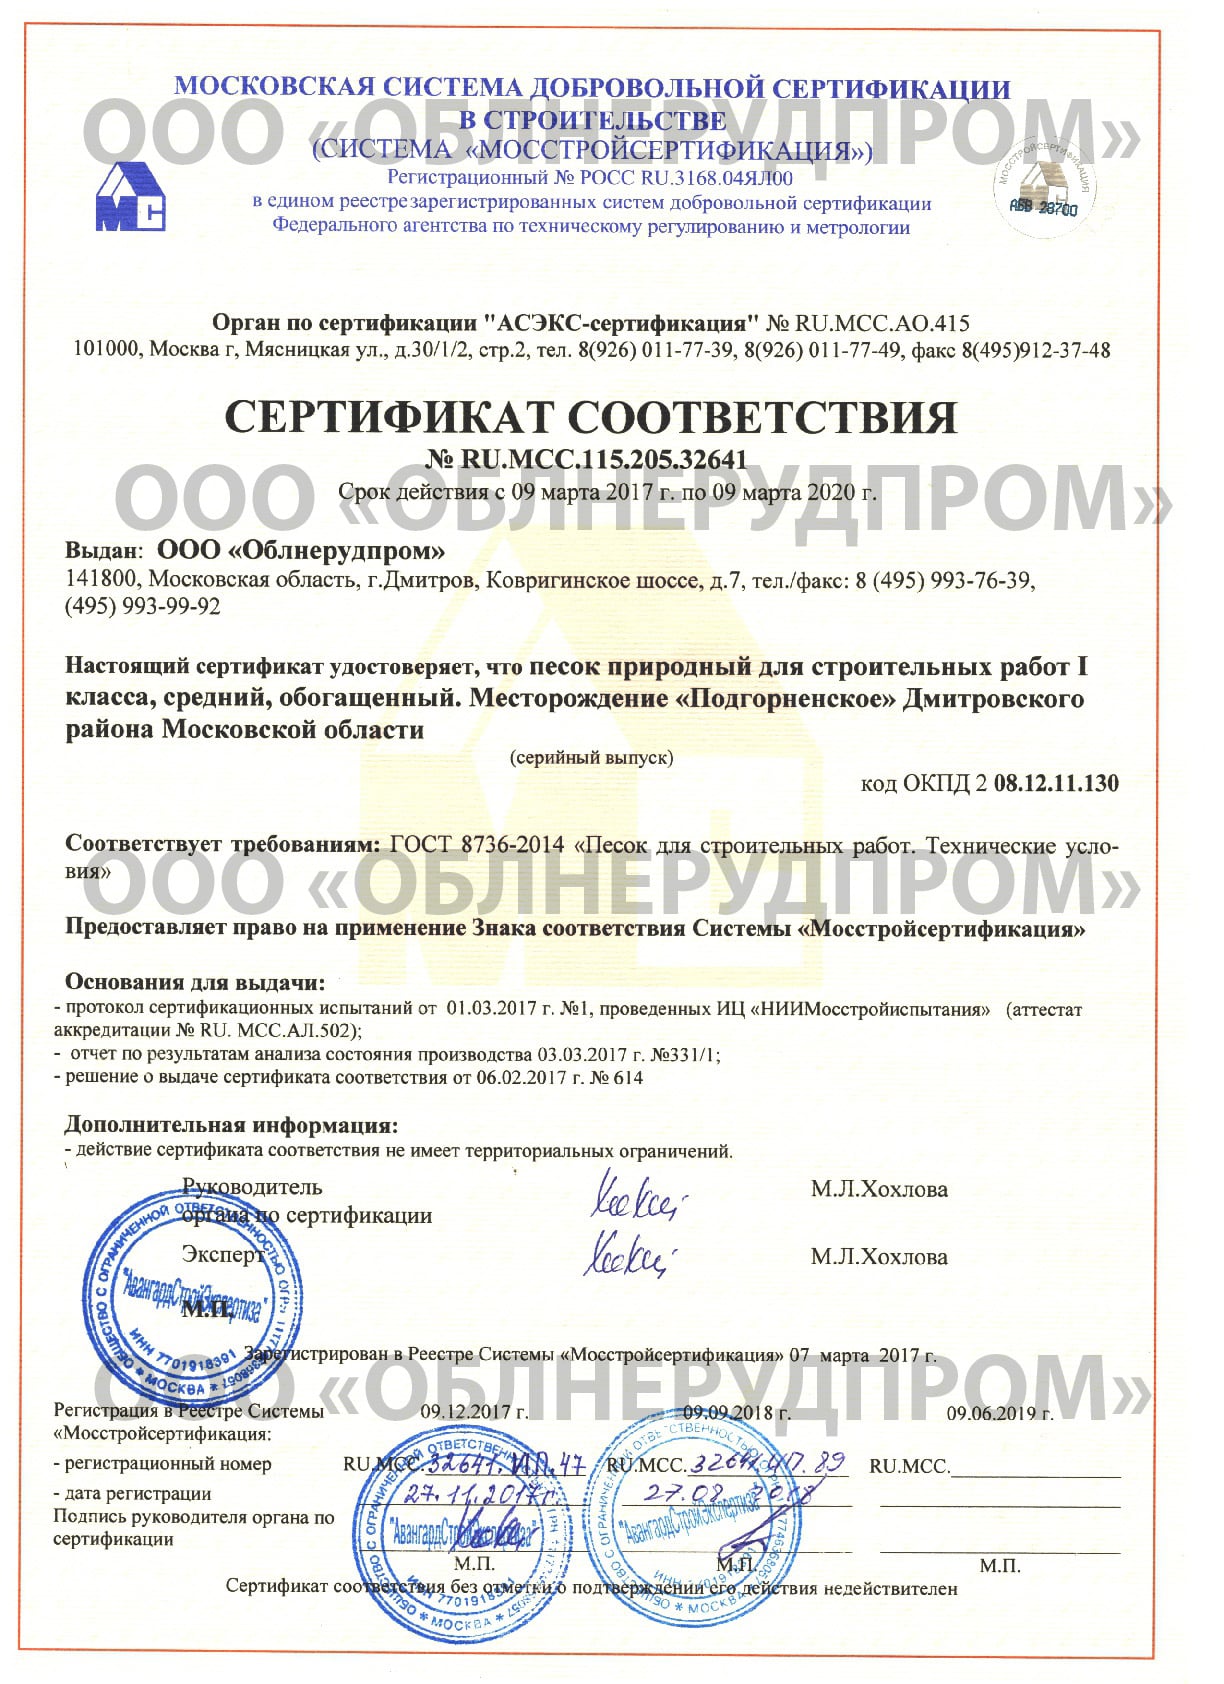 Сертификат на песок природный для строительных работ 1 класса, средний, обогащённый (песок мытый)